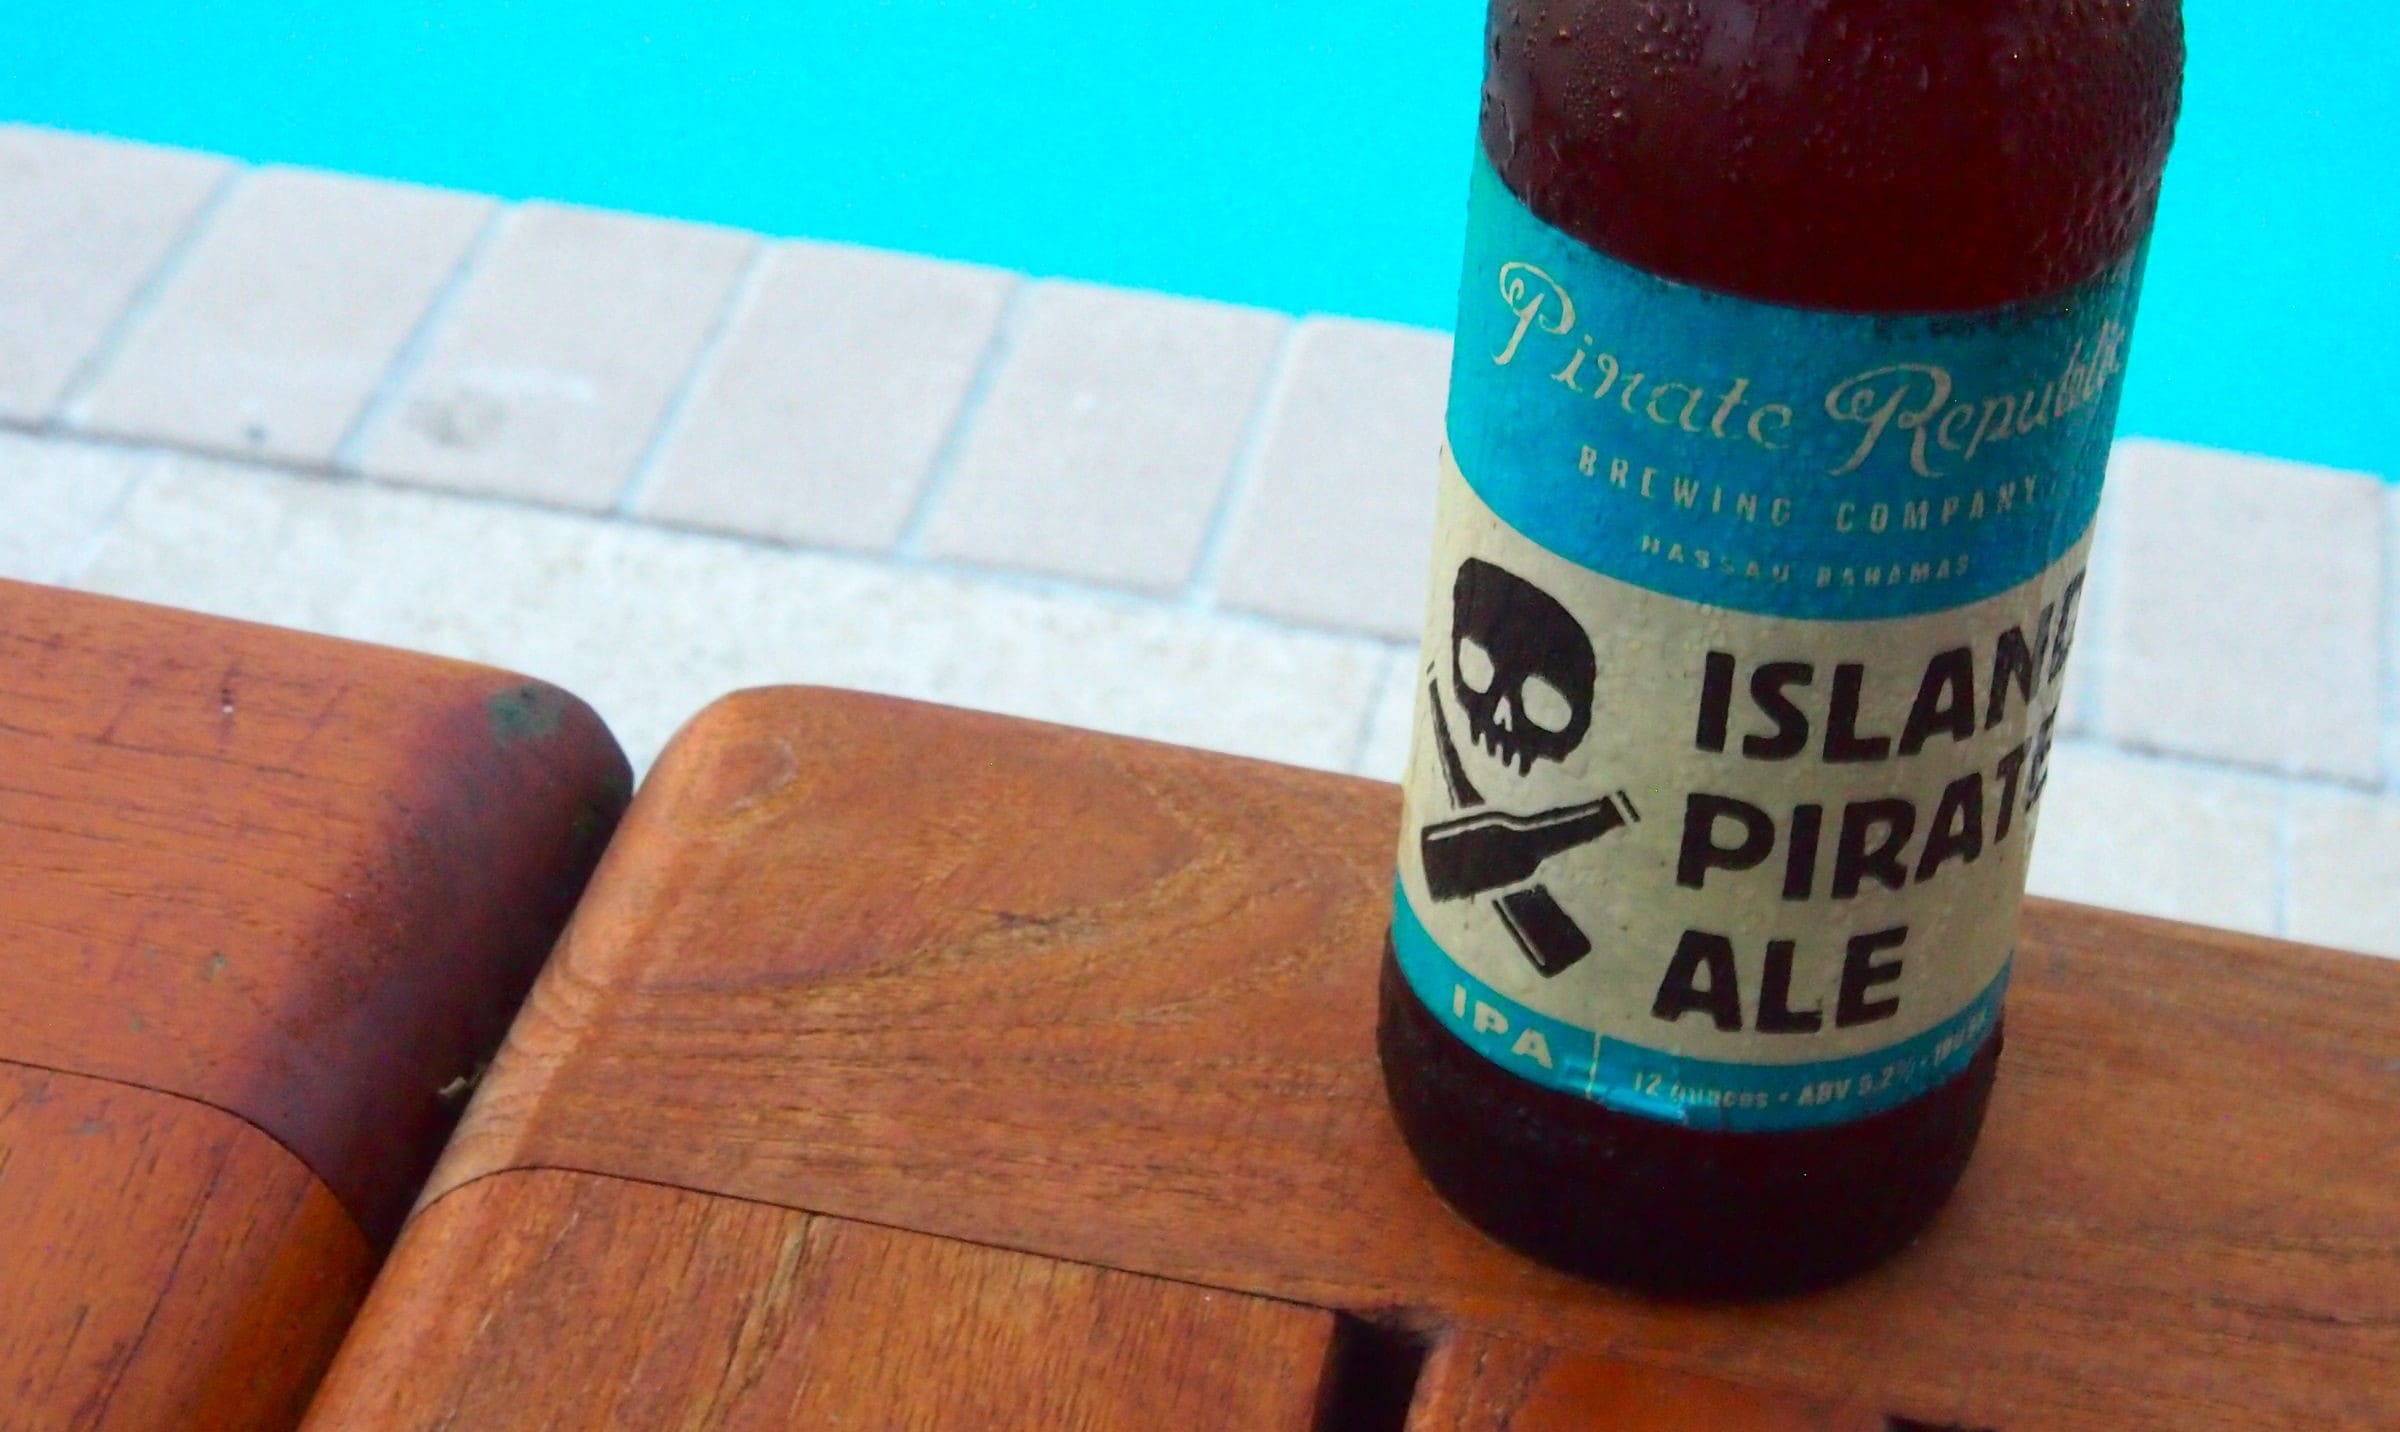 Island Pirate Ale